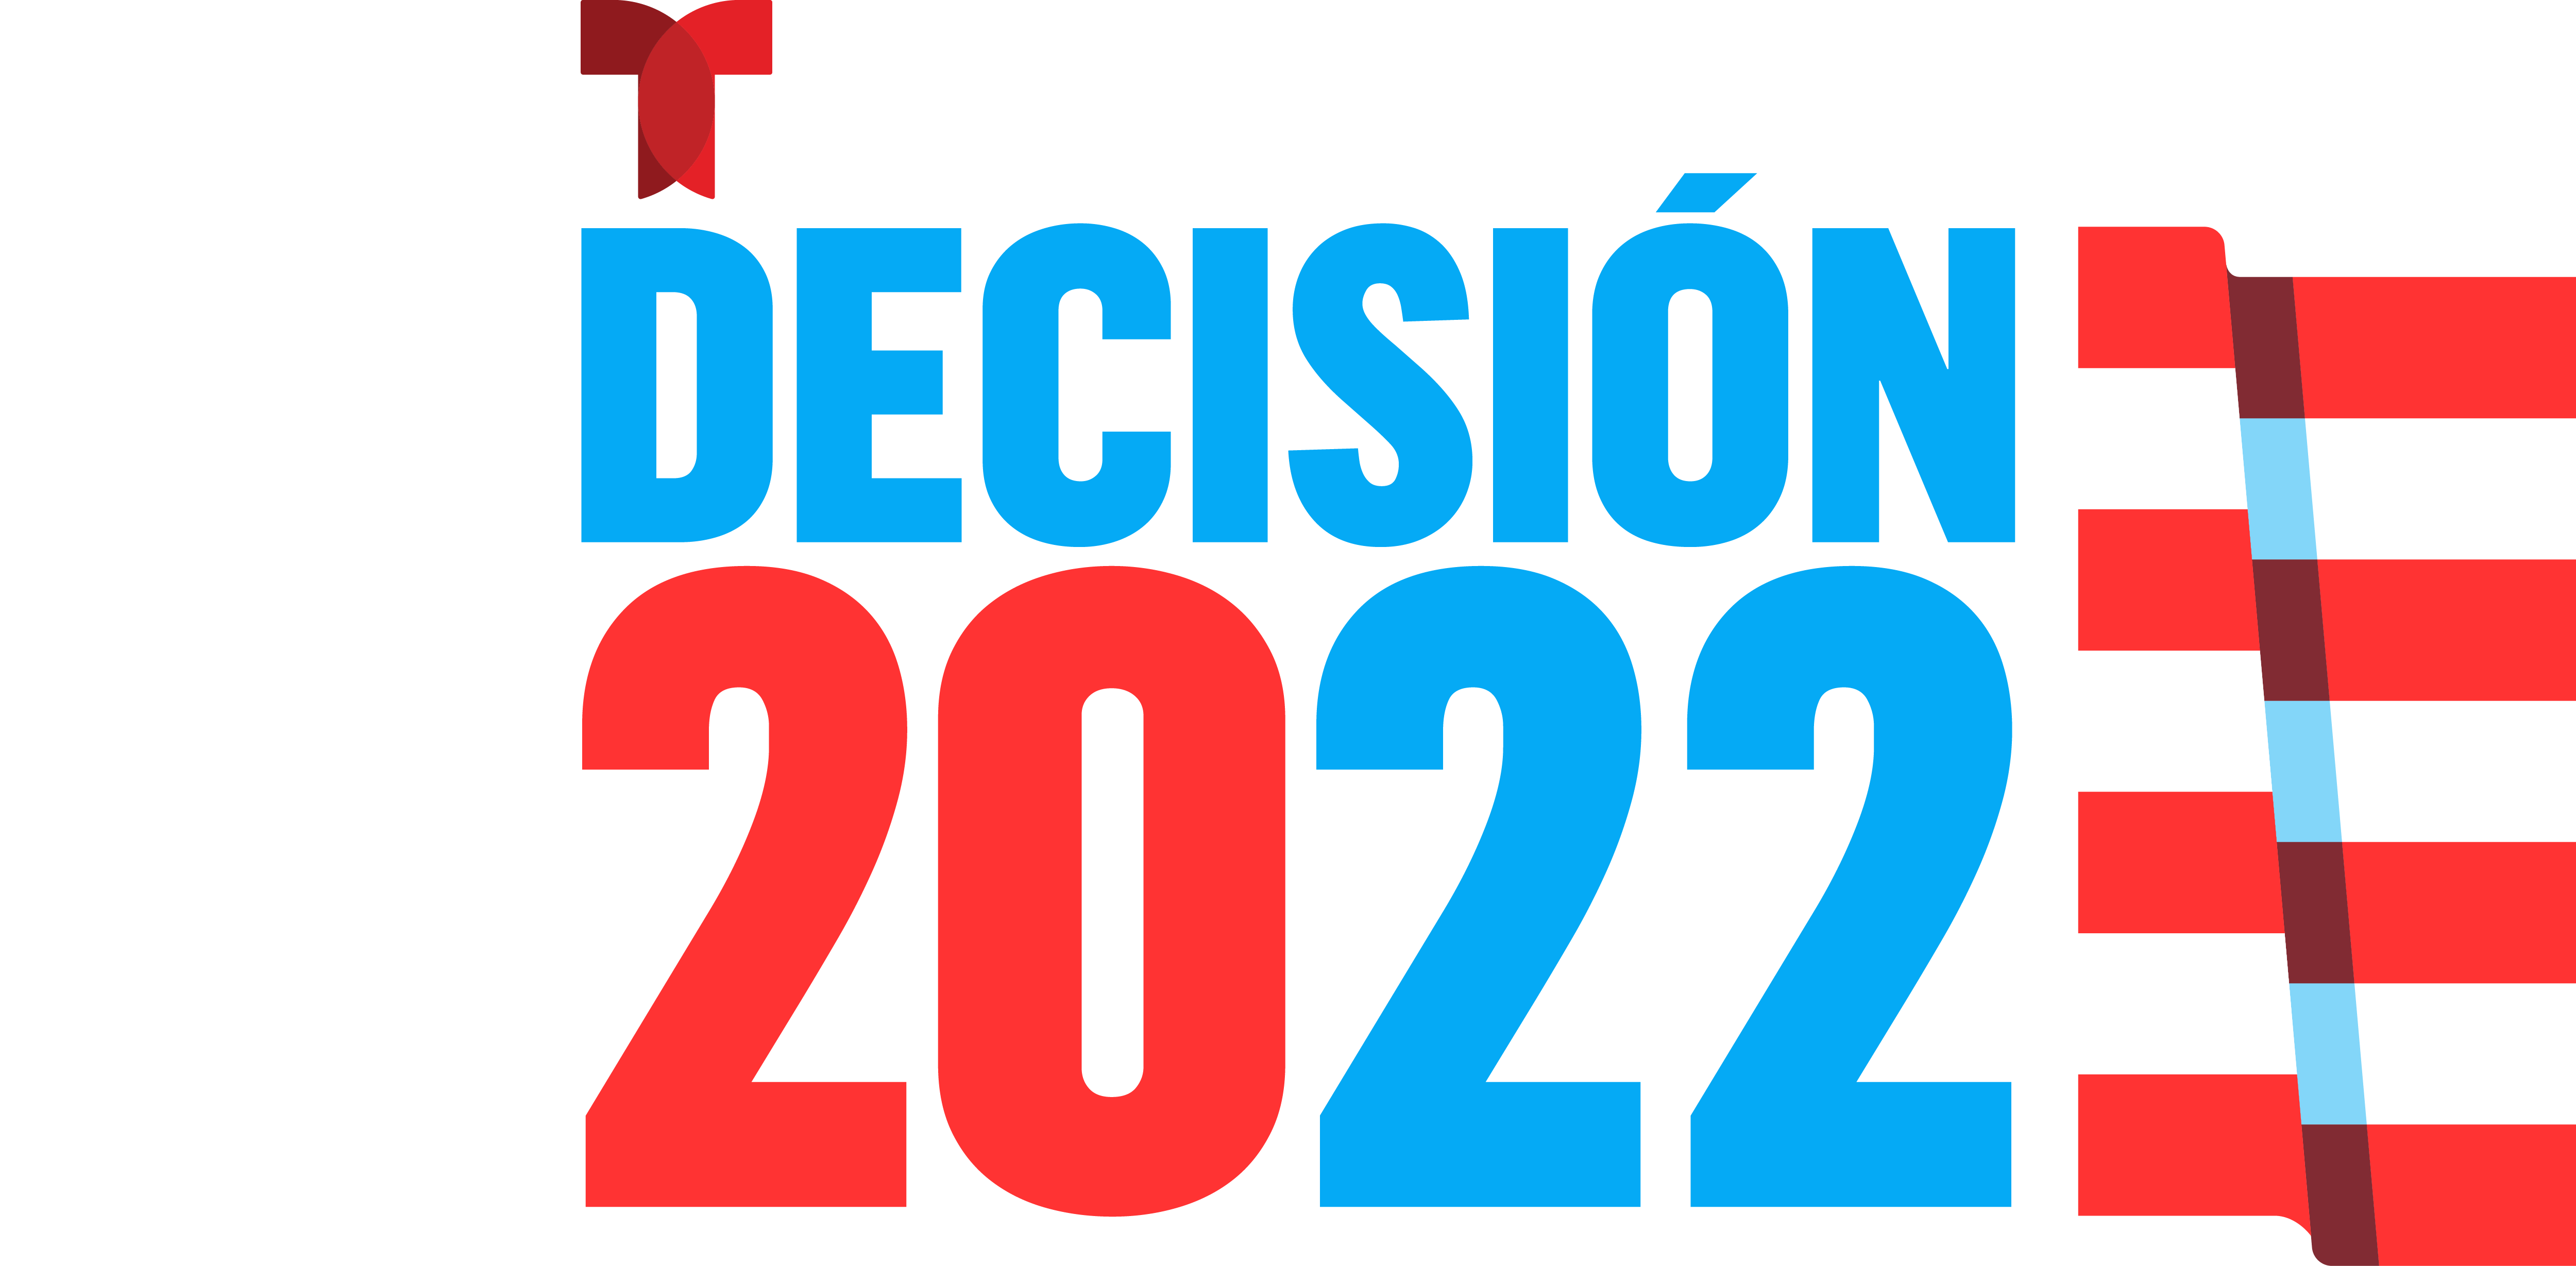 Elecciones 2022